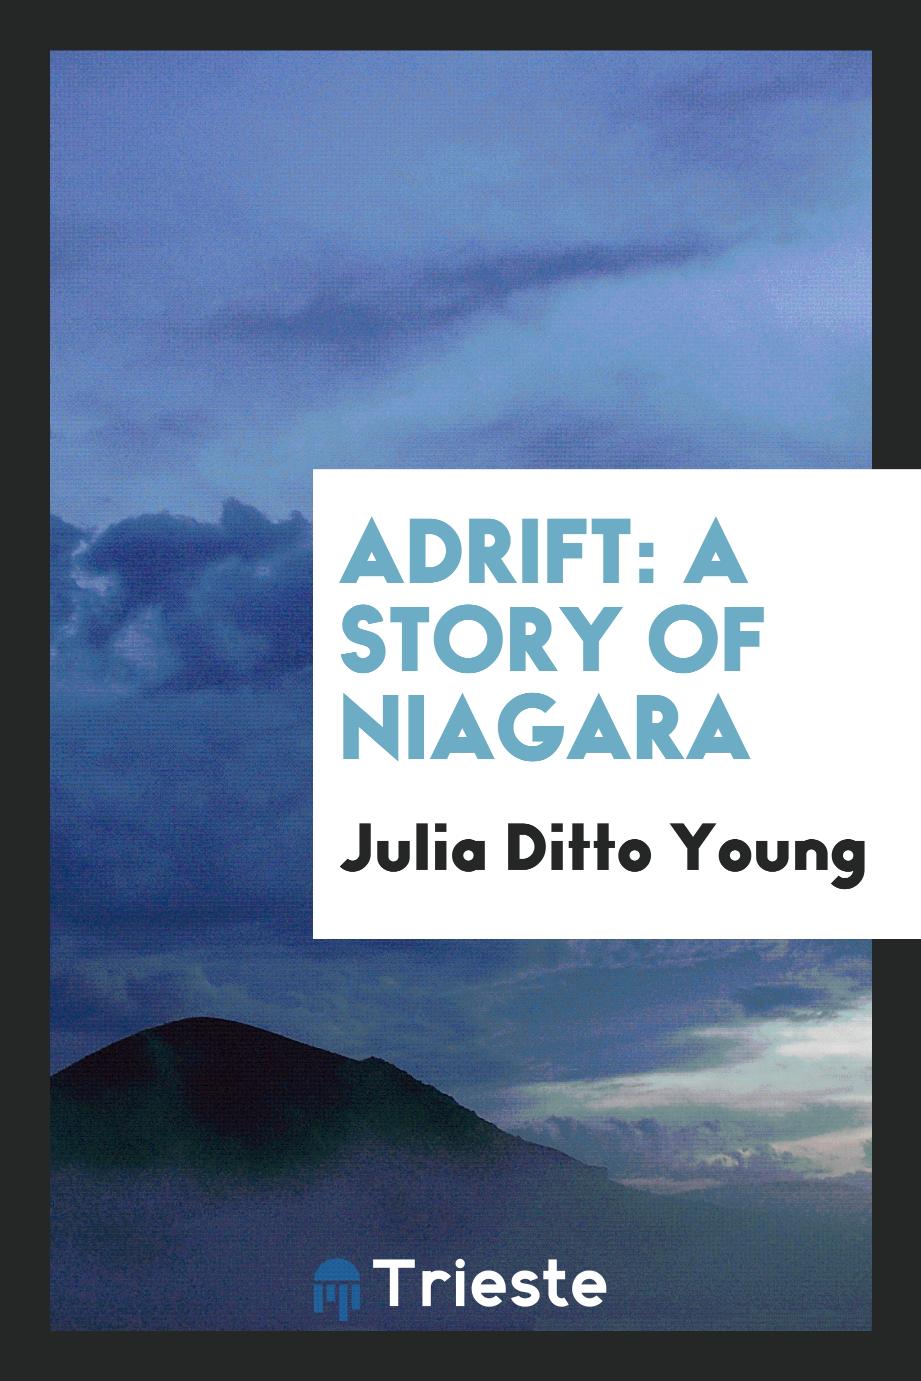 Adrift: A Story of Niagara